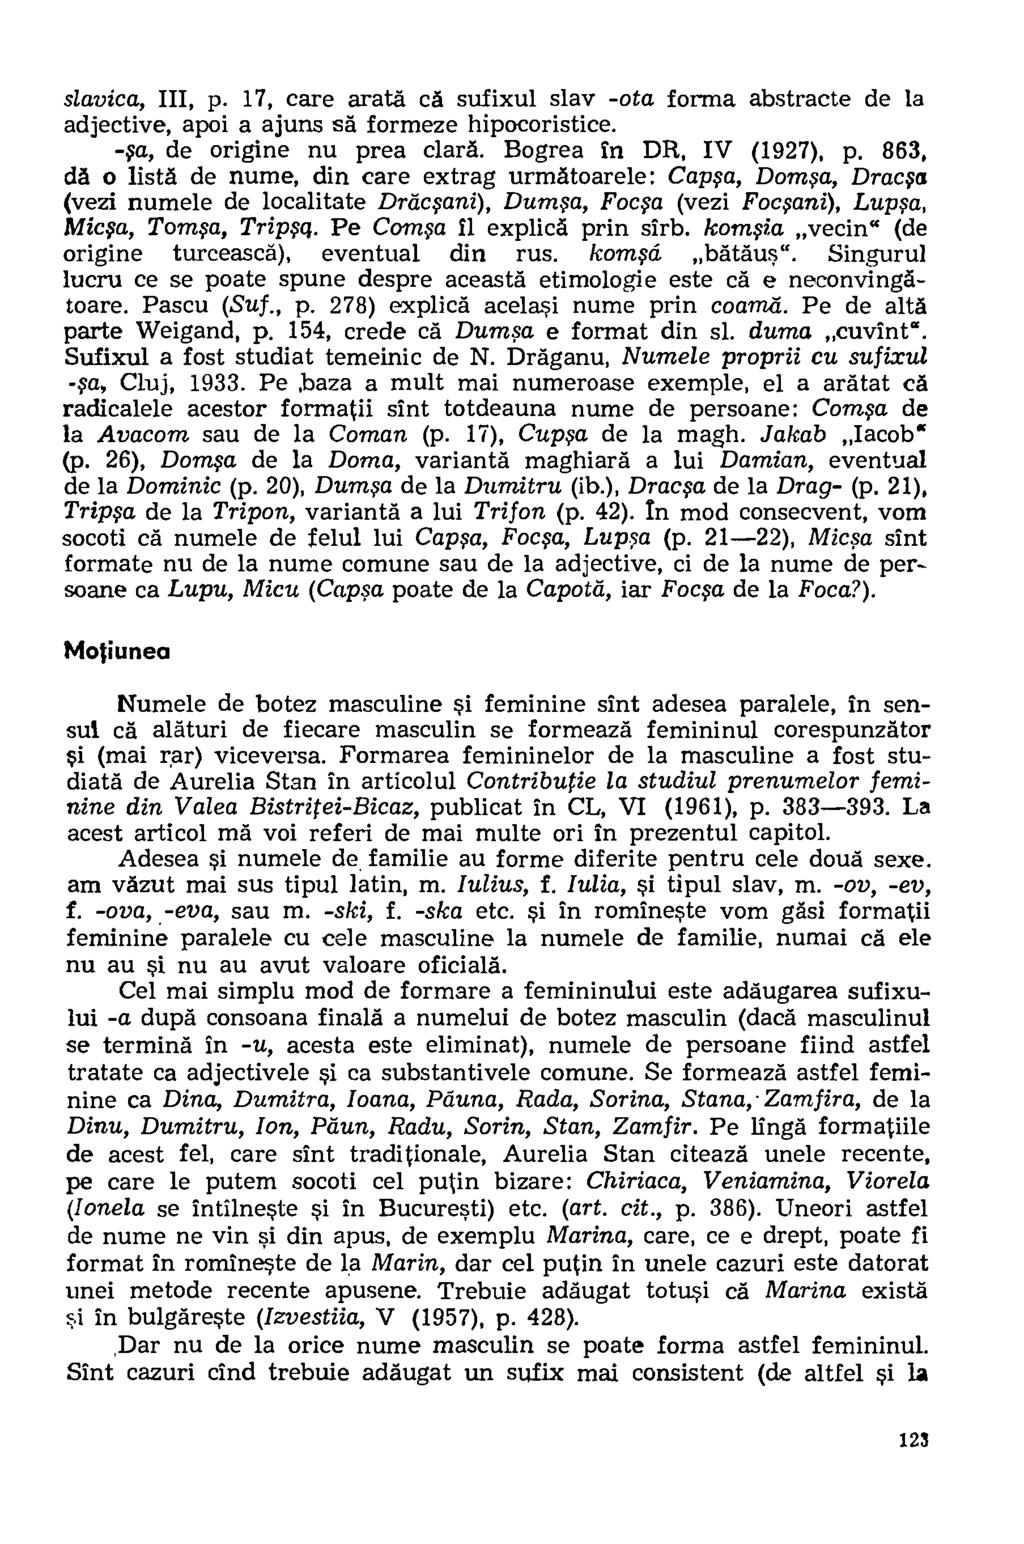 slavica, III, p. 17, care arata ca sufixul slay -ota forma abstracte de la adjective, apoi a ajuns sa formeze hipocoristice. -pa, de origine nu prea clara. Bogrea in DR, IV (1927), p.